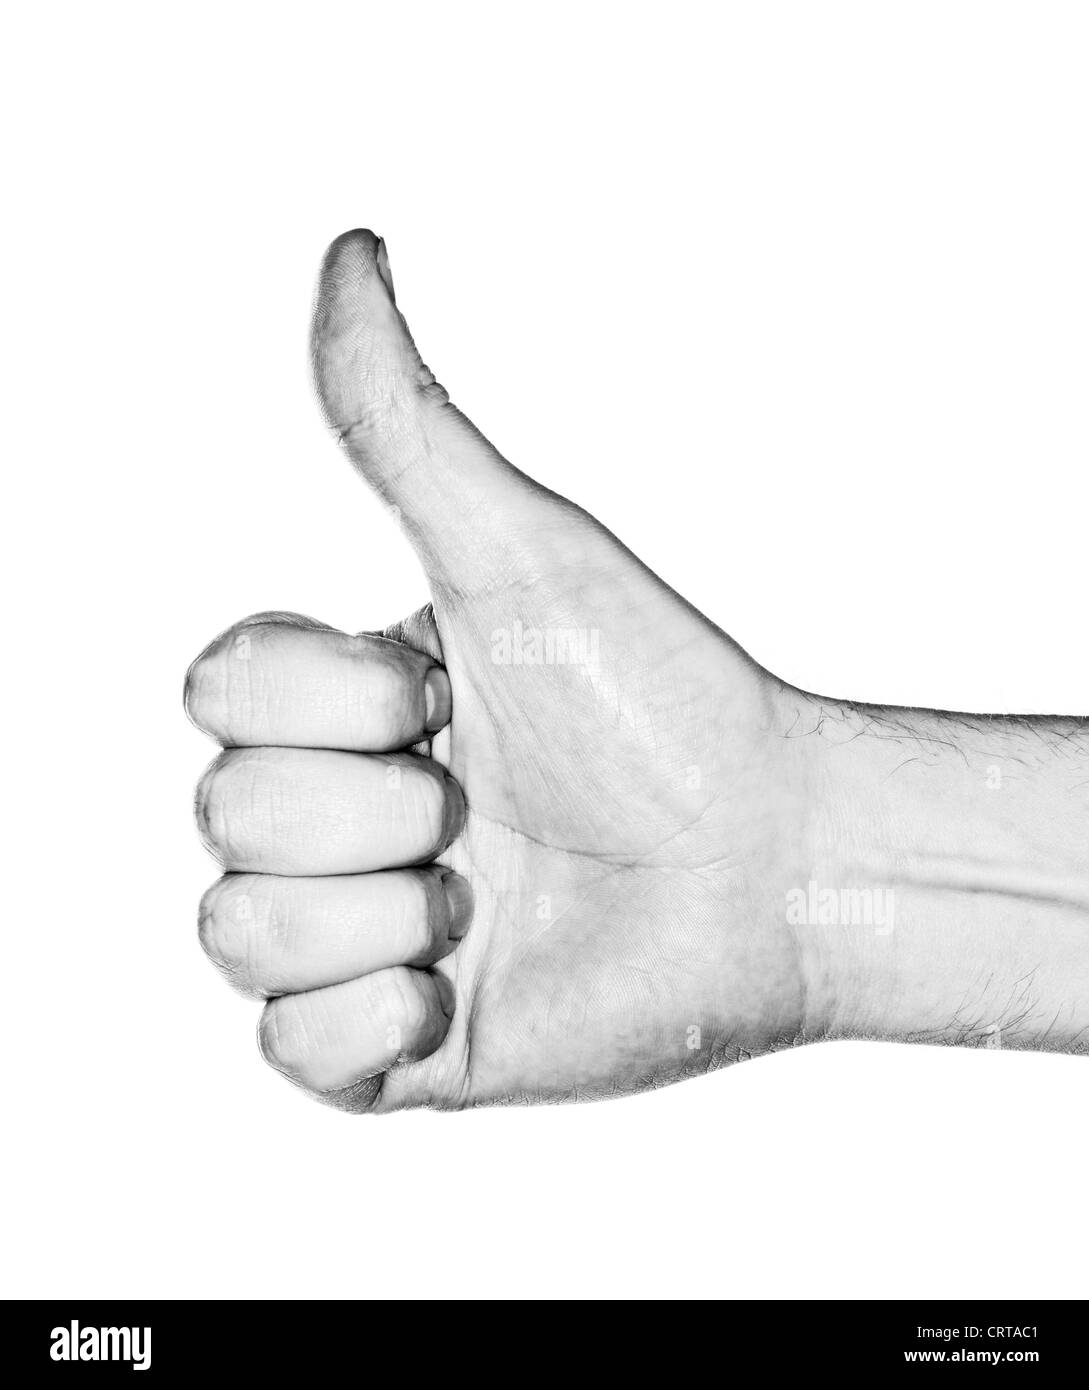 Image en noir et blanc d'une part de faire un geste "thumb up". Photographier avec flash annulaire. Banque D'Images